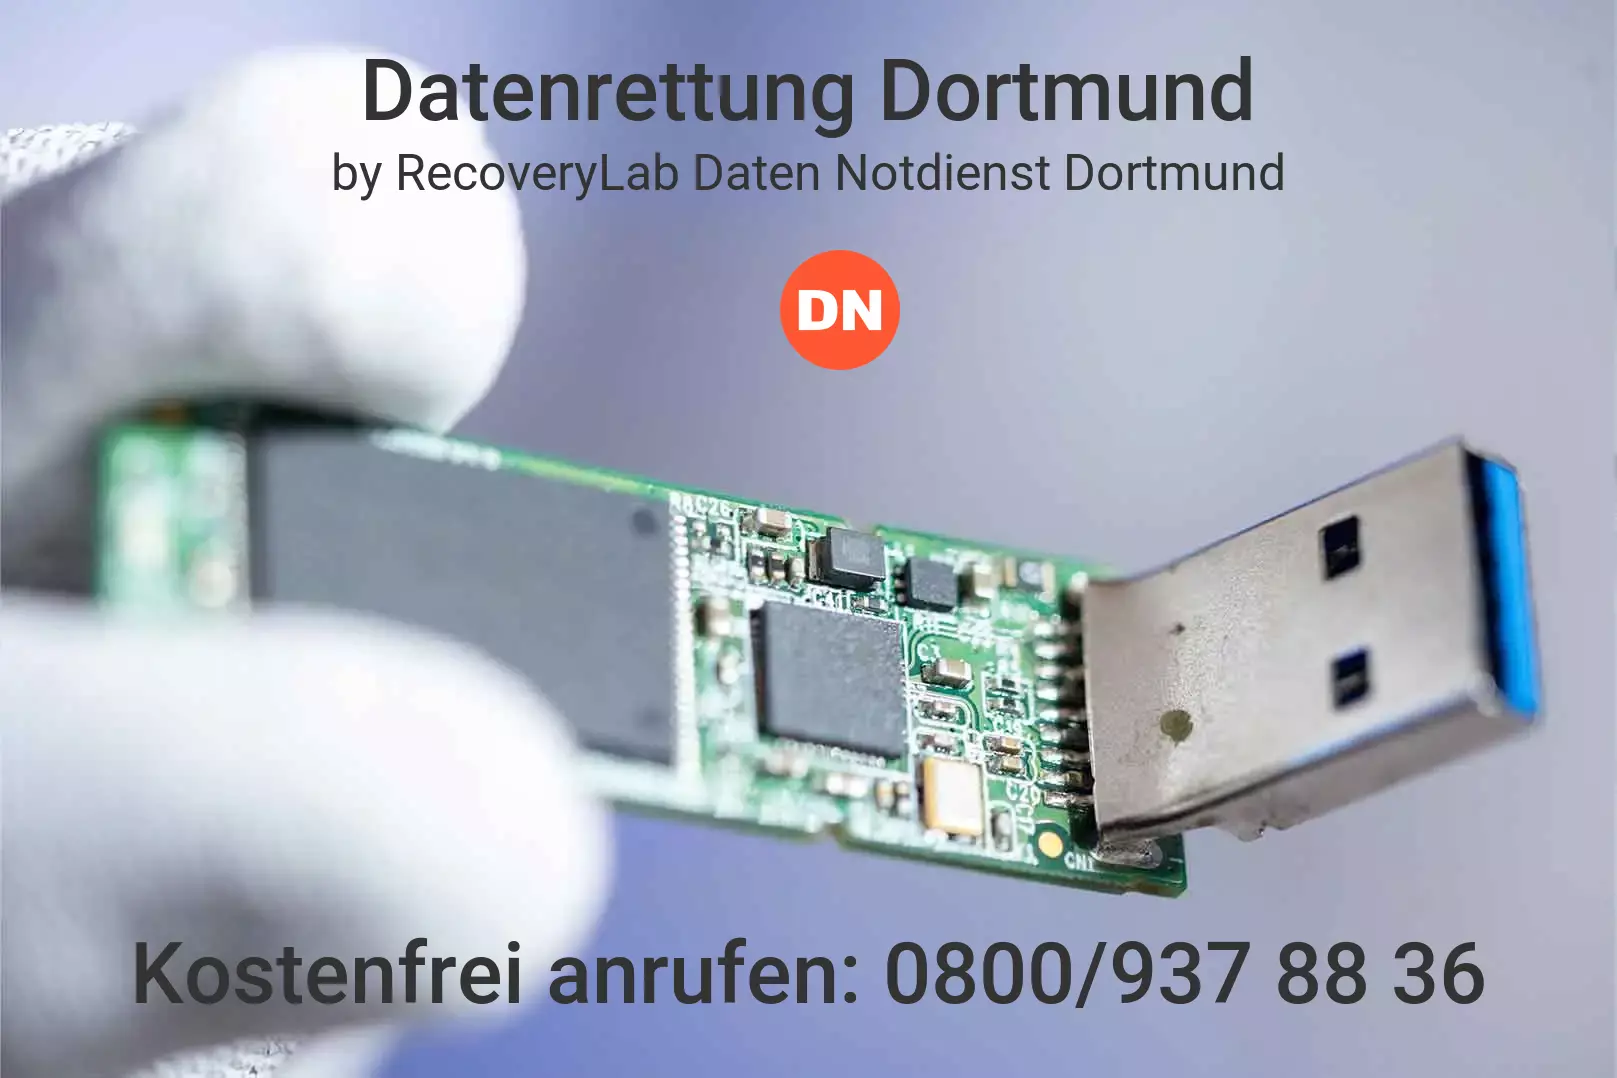 Fallstudie zu erfolgreicher Datenrettung USB-Stick Dortmund